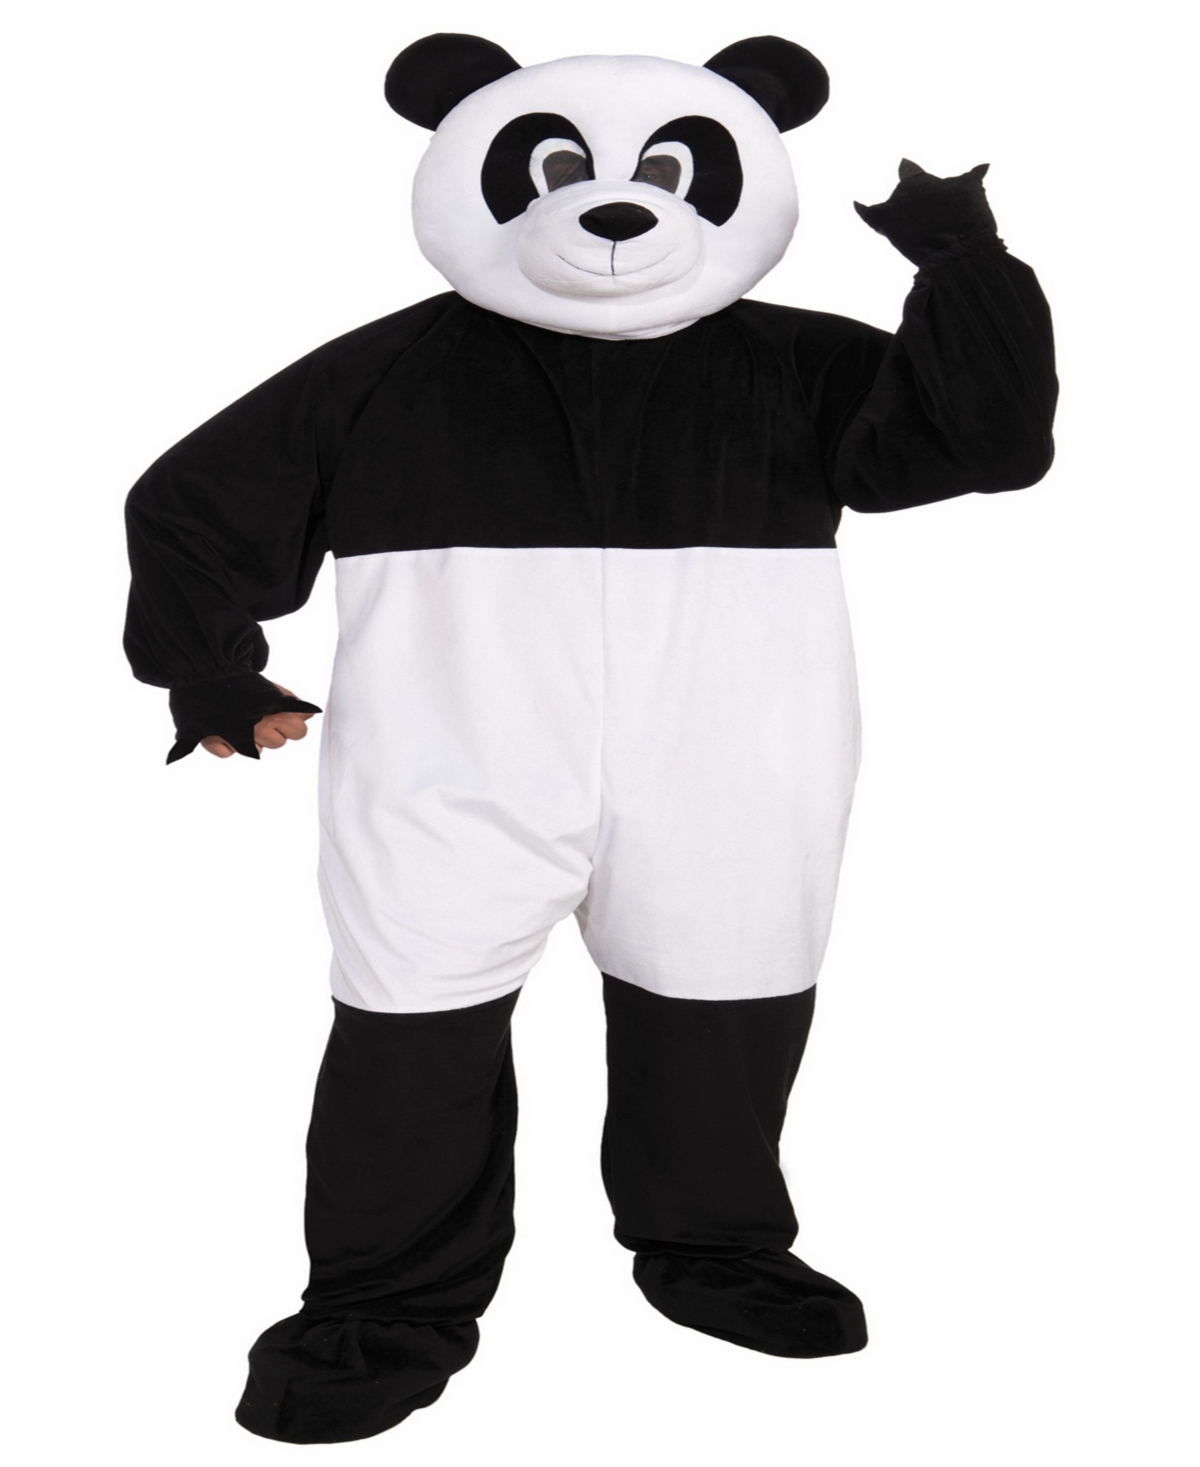 Buy Seasons Men's Panda Mascot Costume - Black